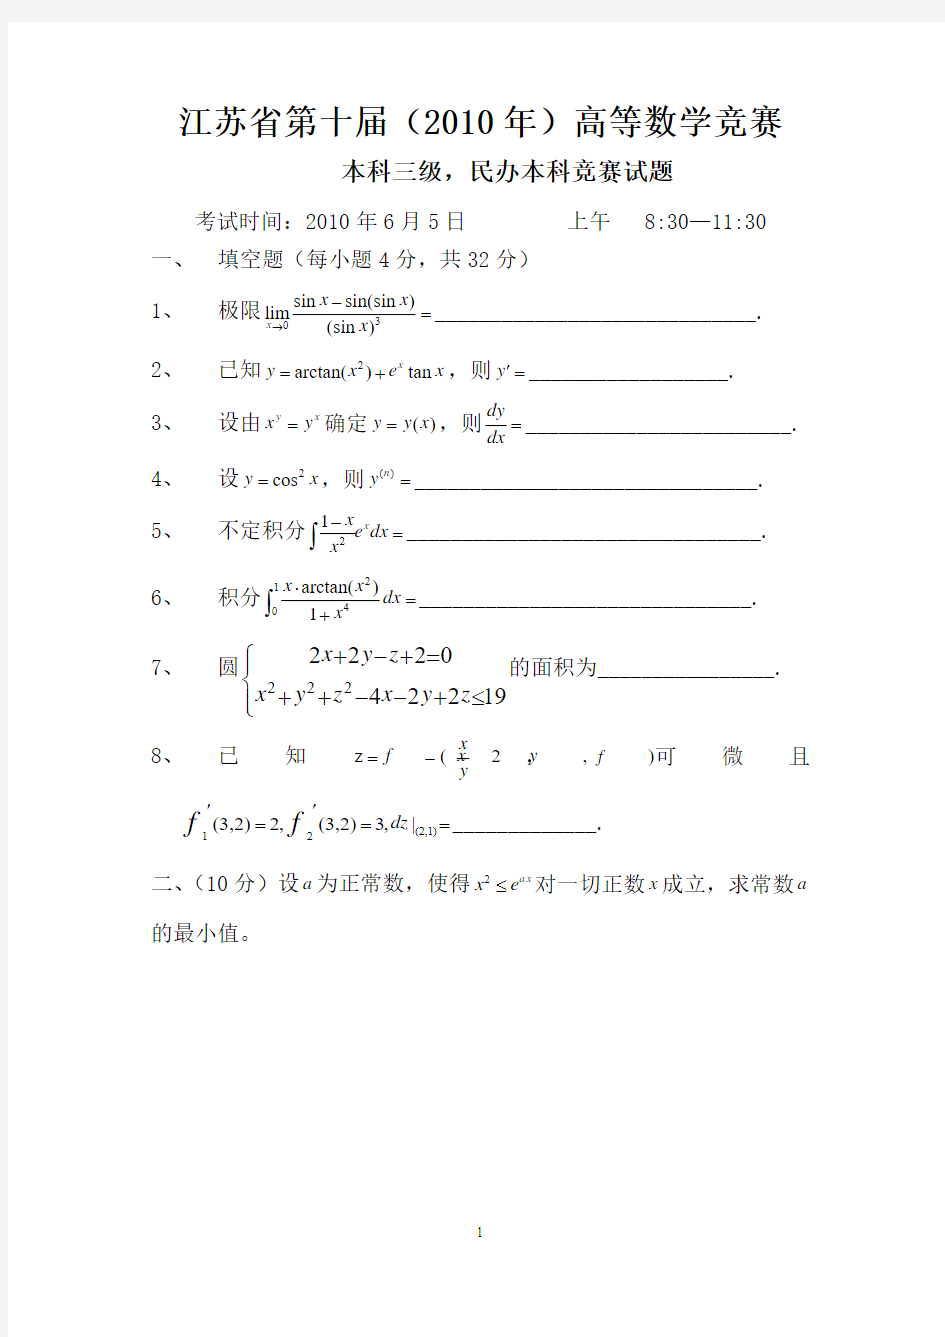 江苏省第十届(2010年)高等数学竞赛试题(本科三级、民办本科)